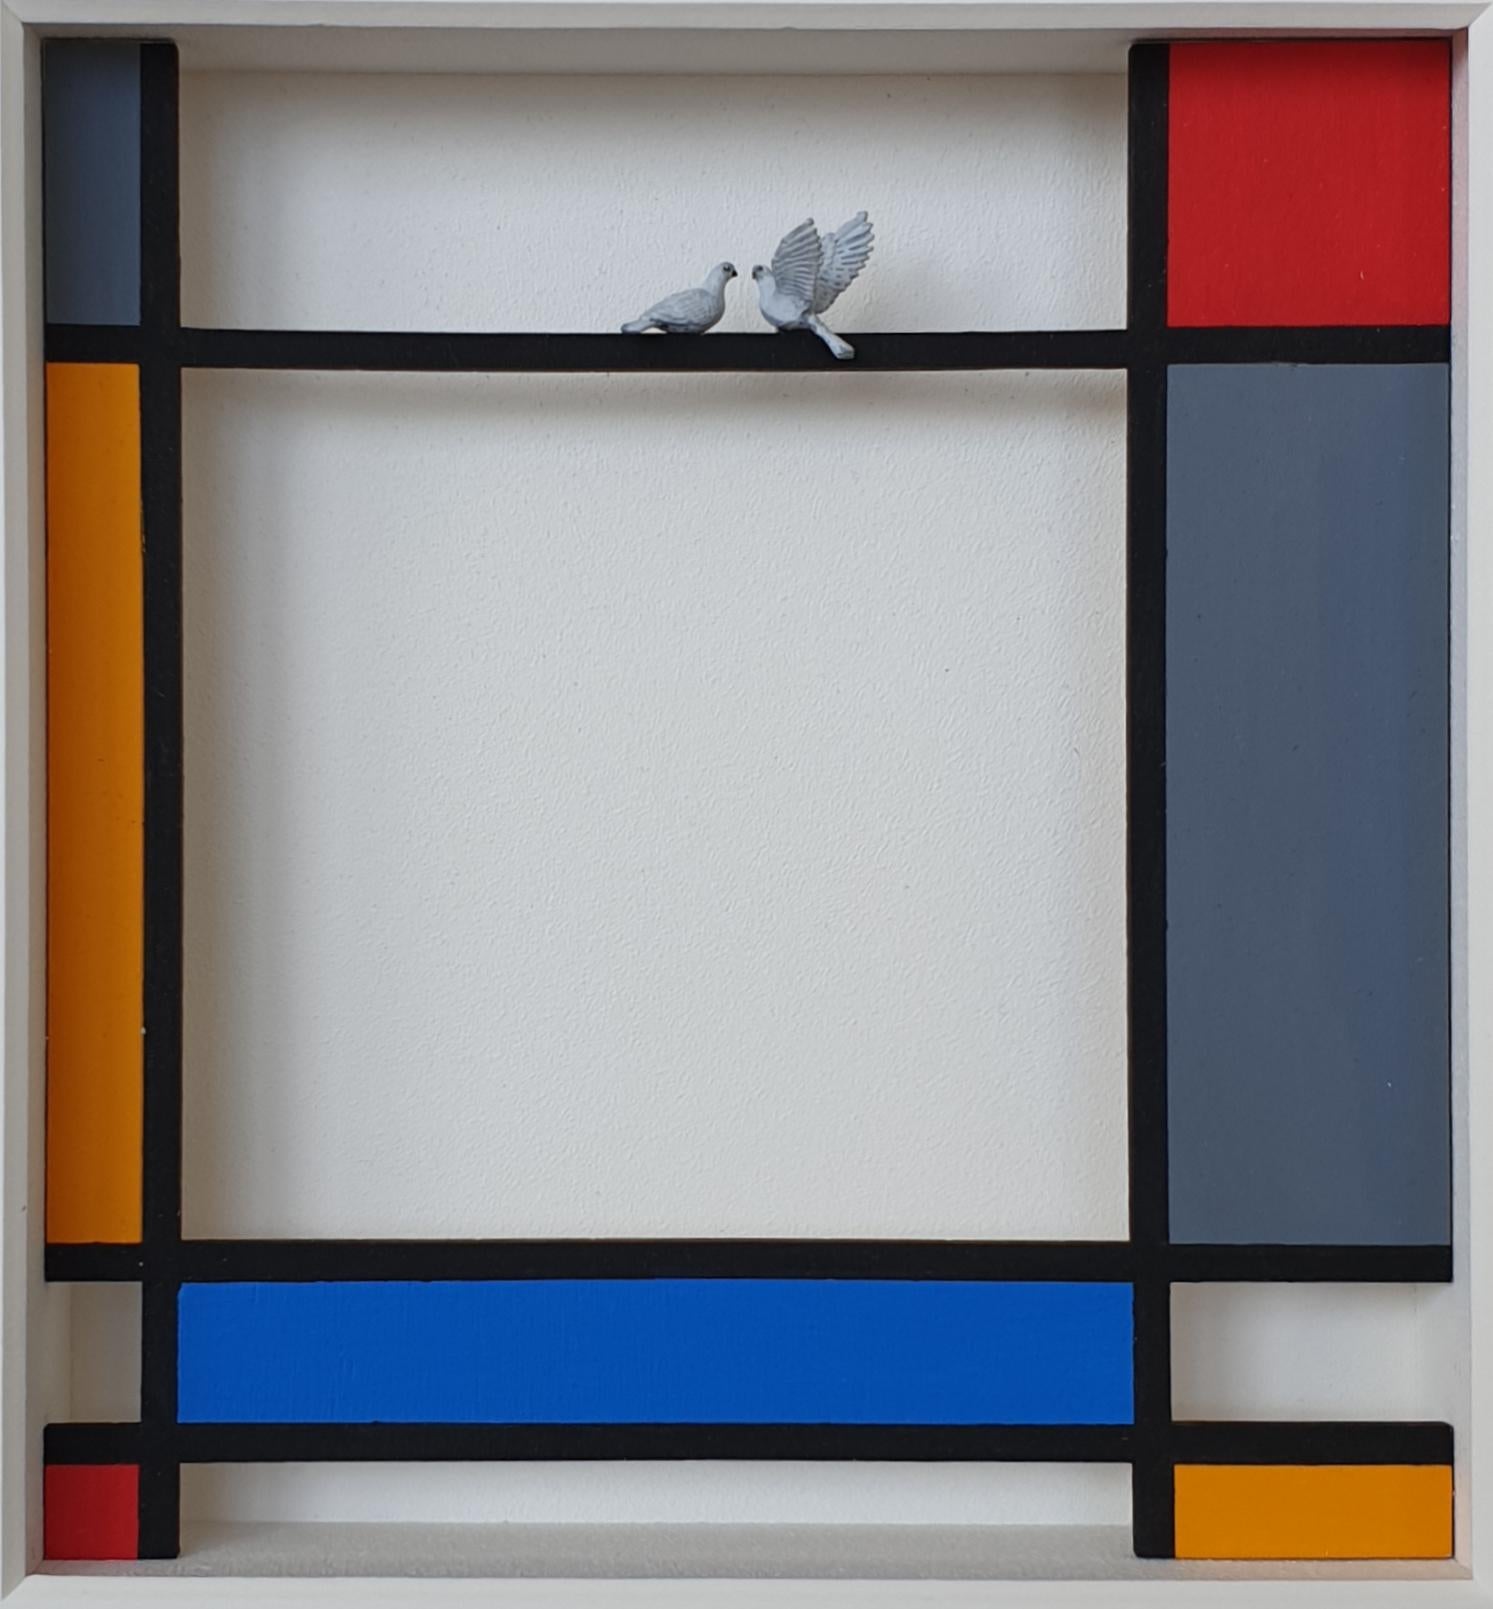 Hommage an Mondrian - Perch - zeitgenössisches Kunstwerk, Design Hommage an den niederländischen Meister – Mixed Media Art von Volker Kuhn